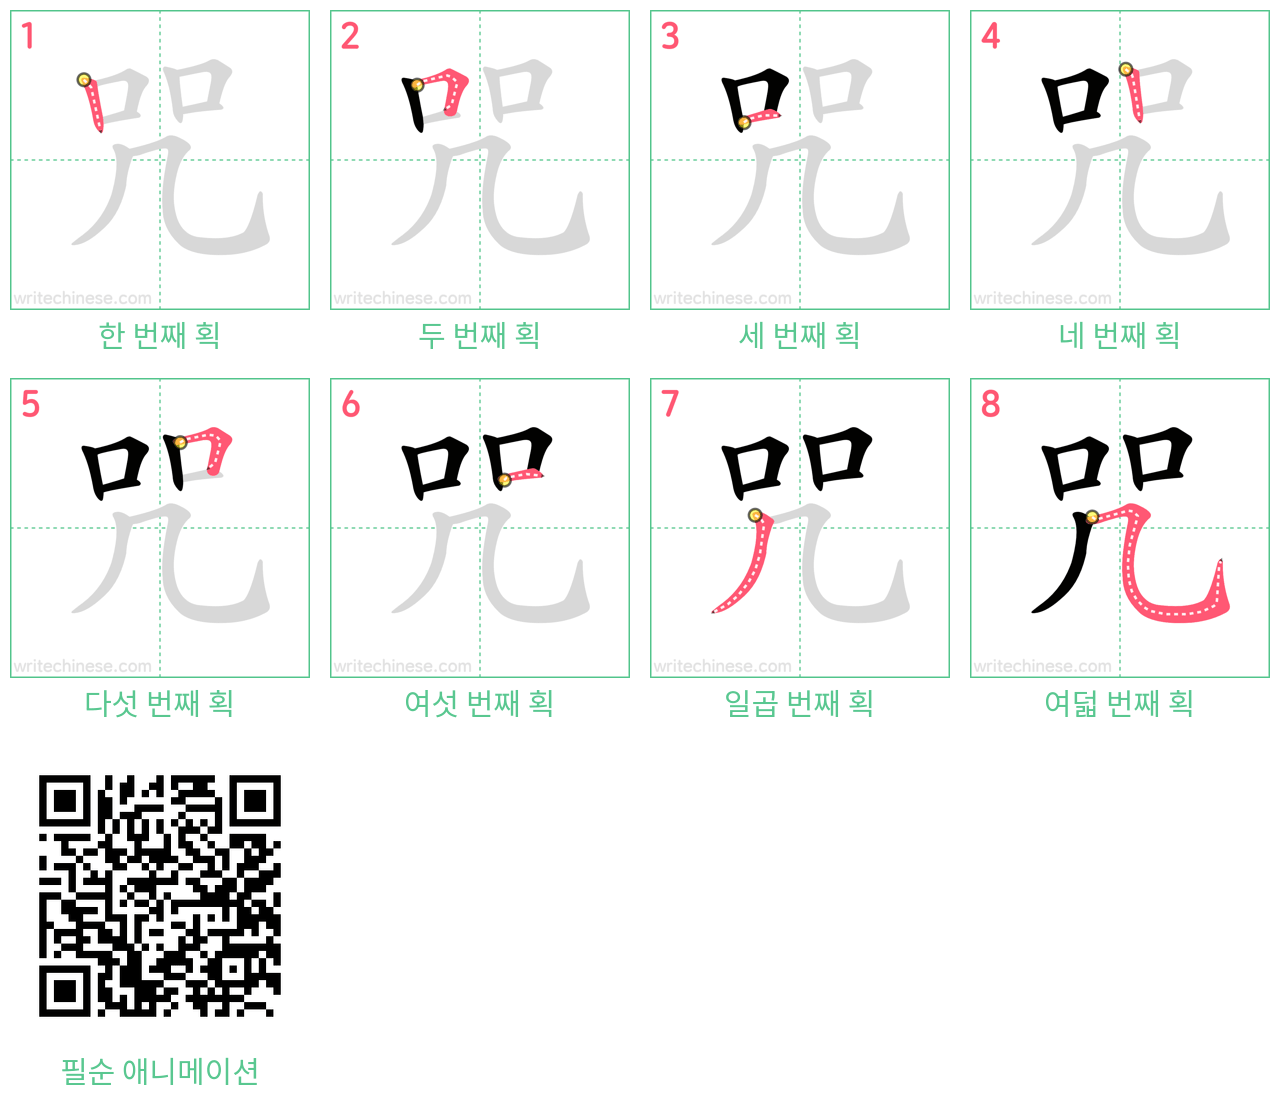 咒 step-by-step stroke order diagrams